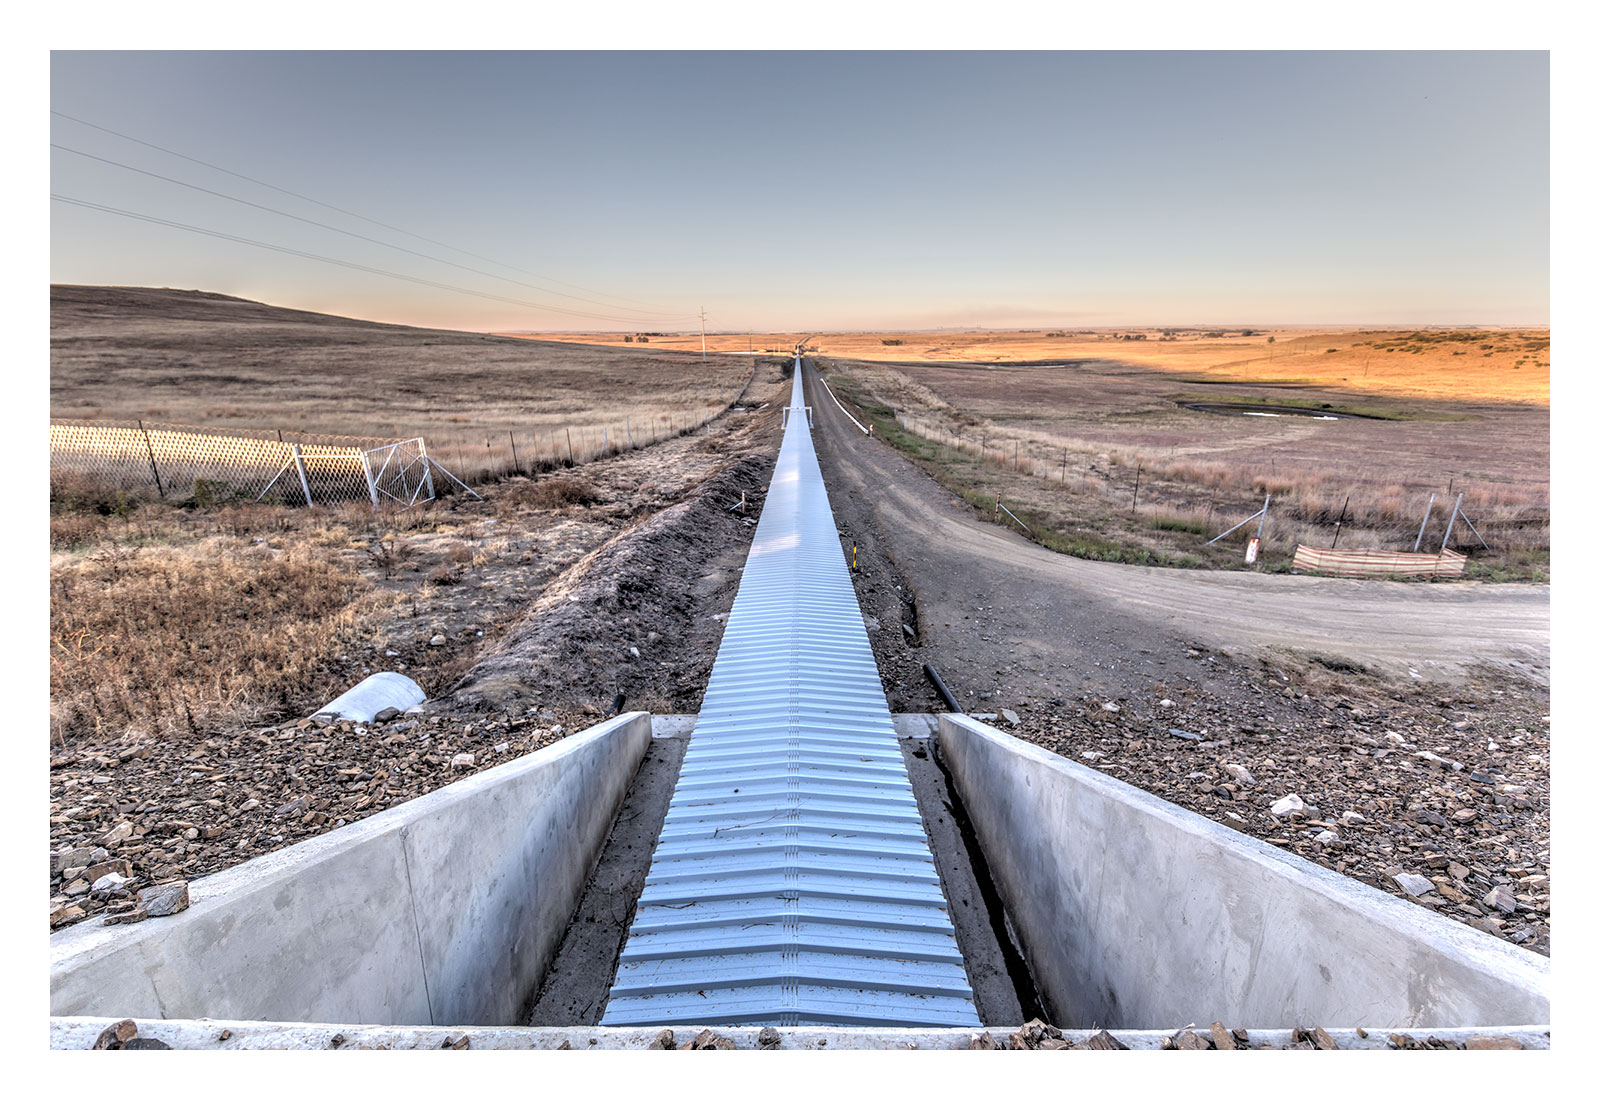 conveyor belt in desert